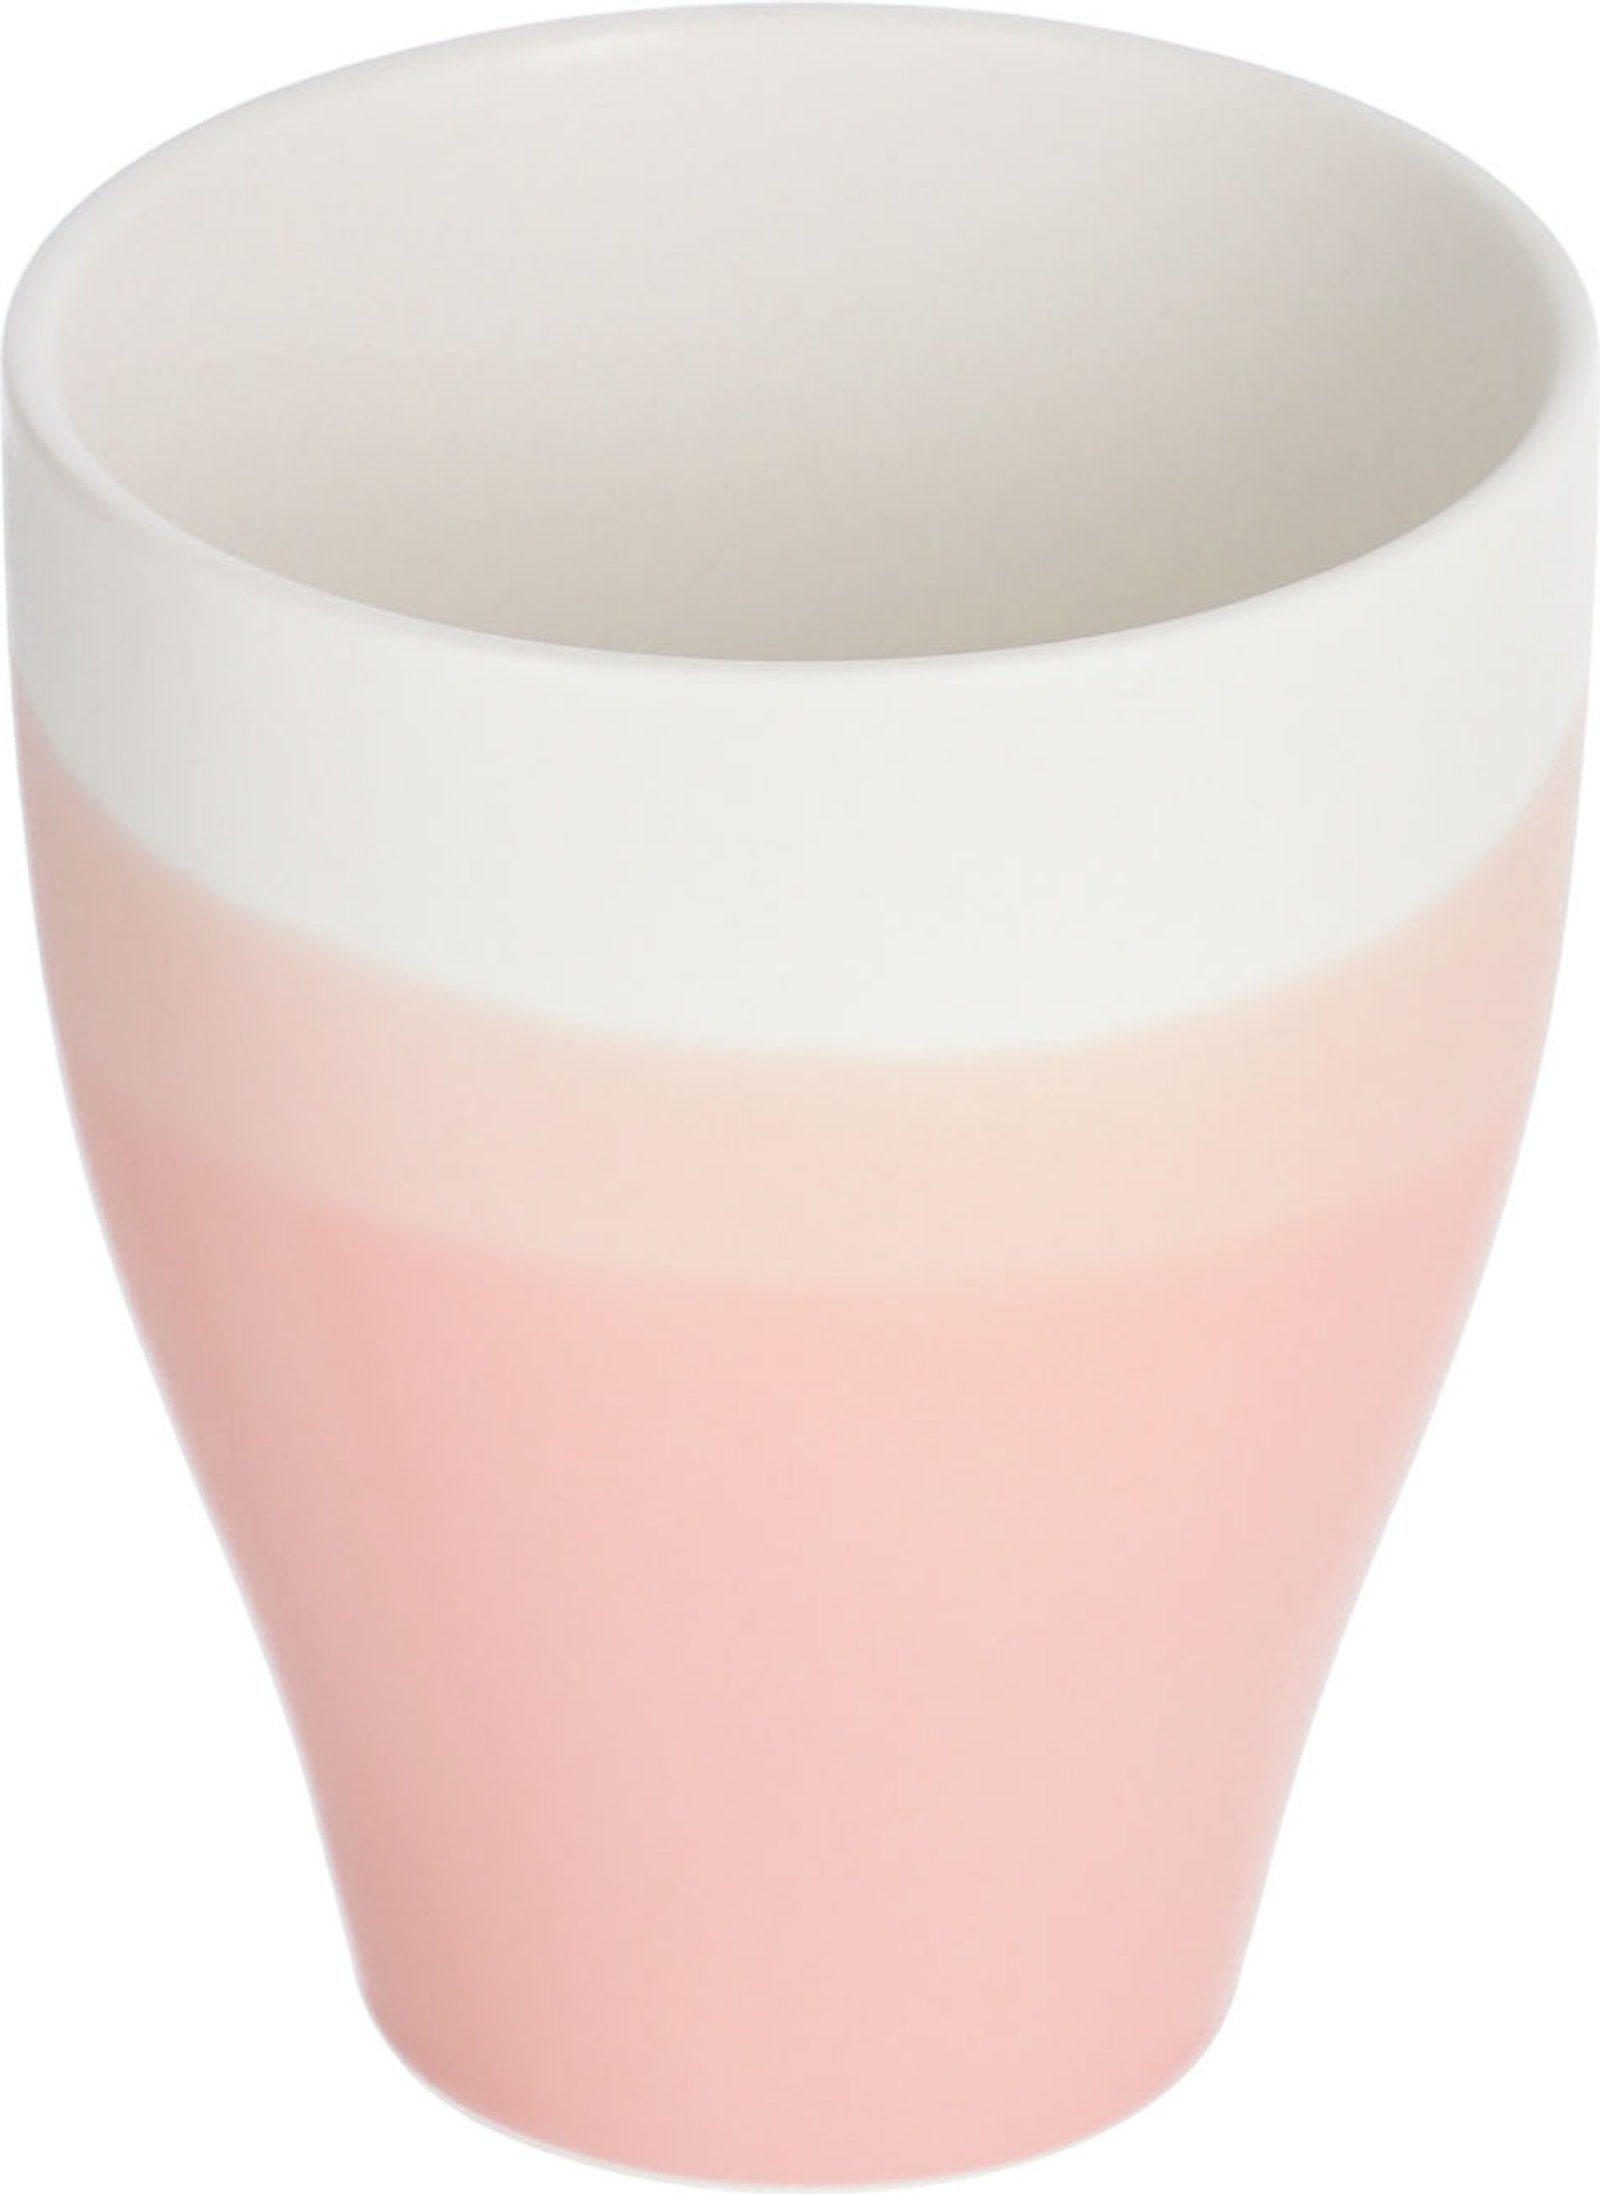 LAFORMA Sayuri stor kop - lyserød og hvid porcelæn